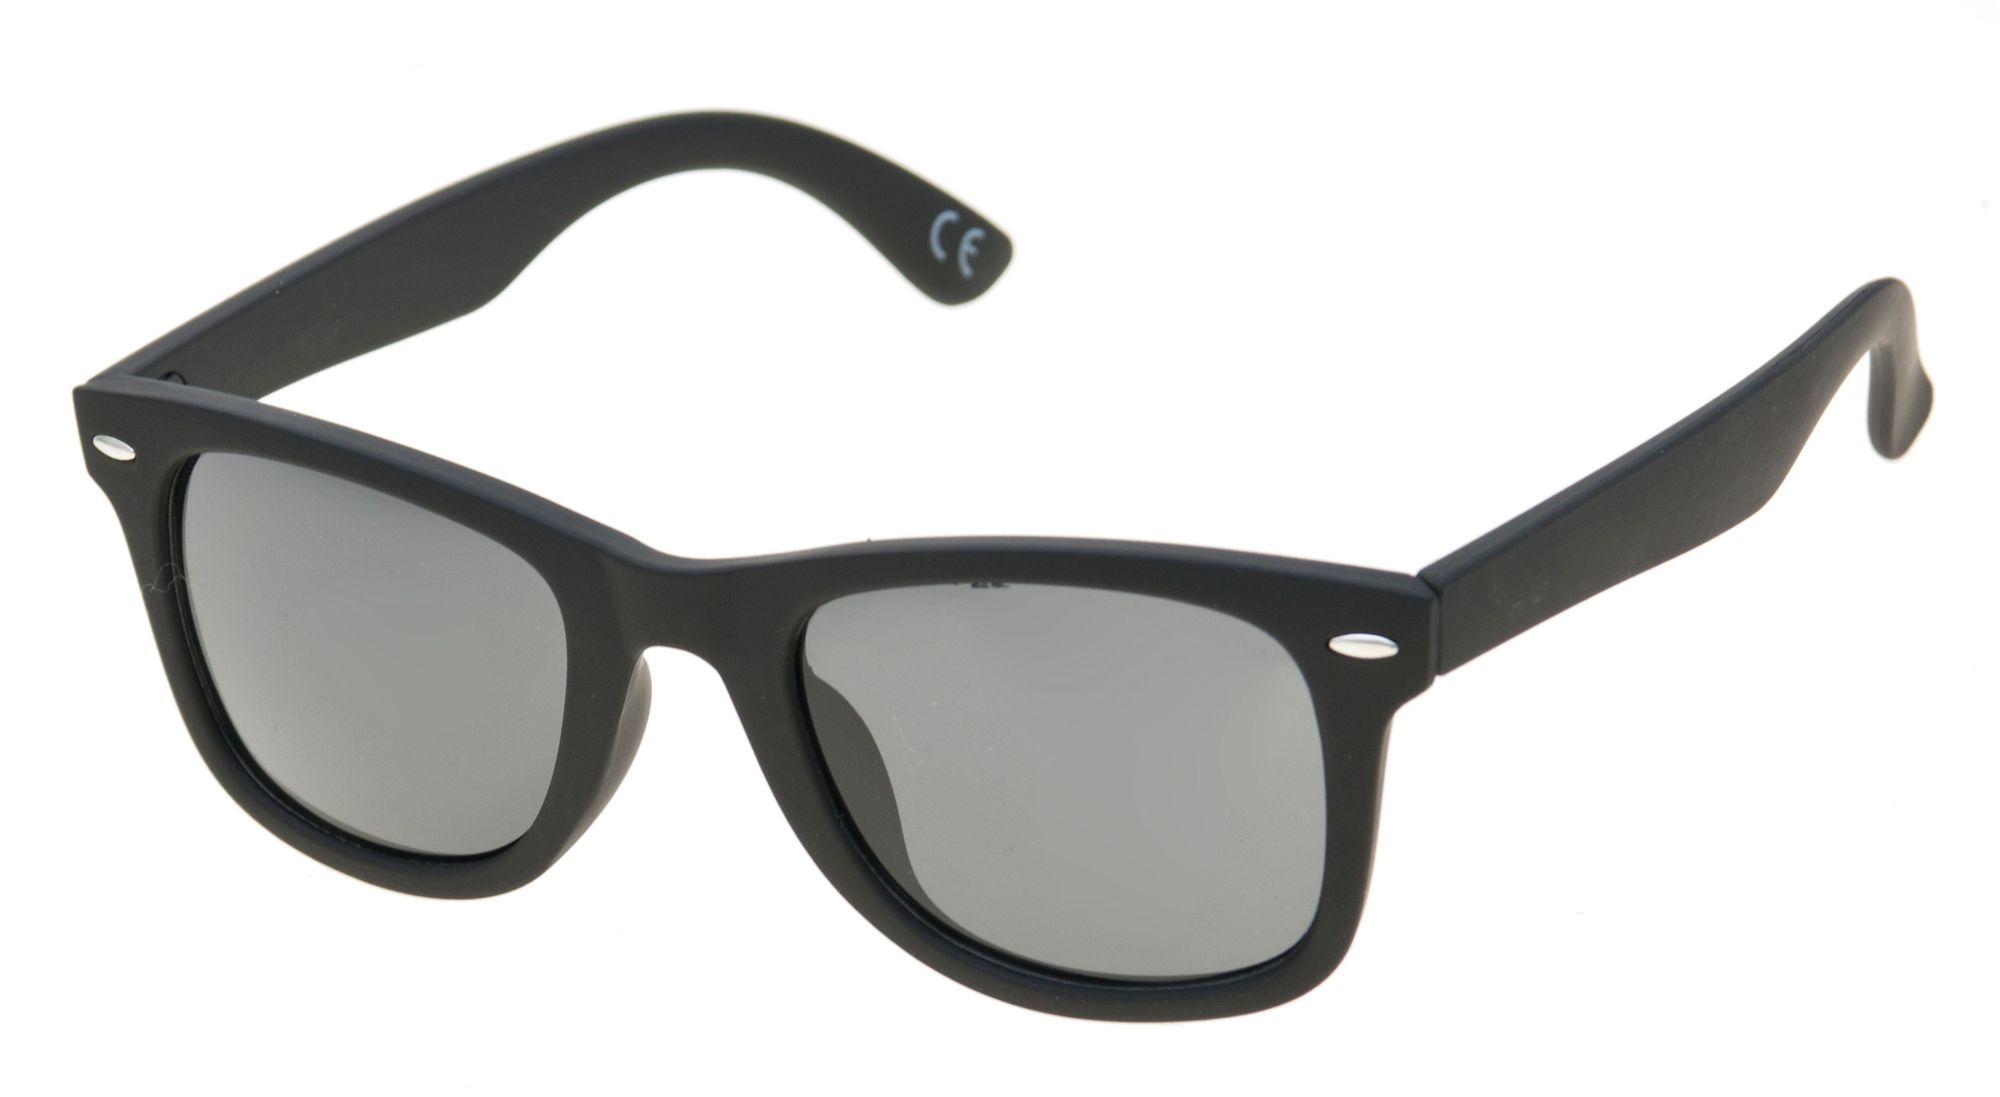 Alpine Design Classic Square Black Lens Sunglasses